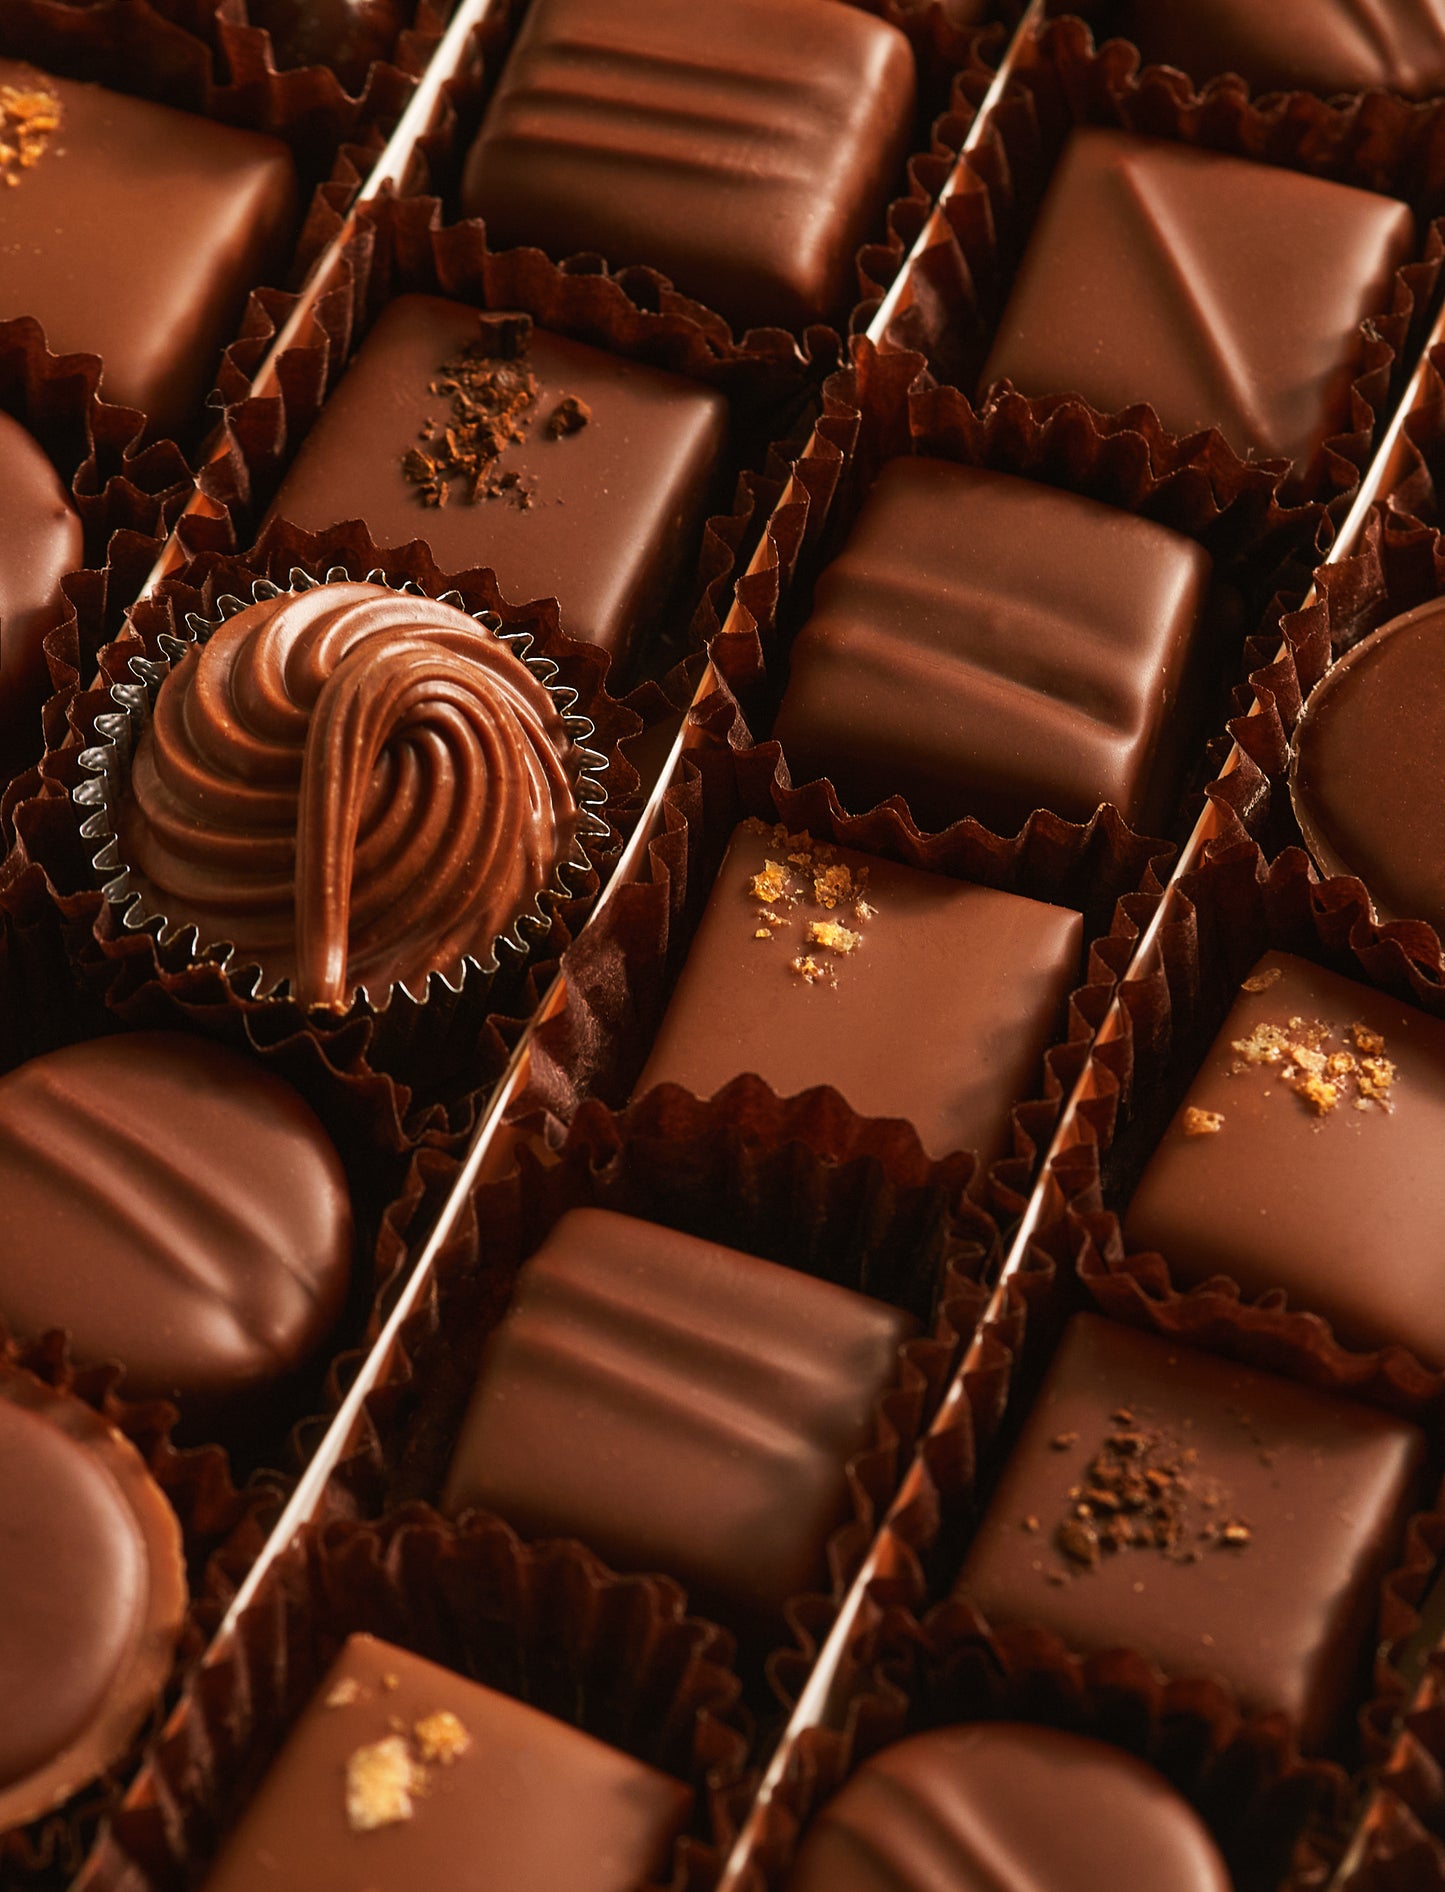 Les chocolats au Lait (96 chocolats)